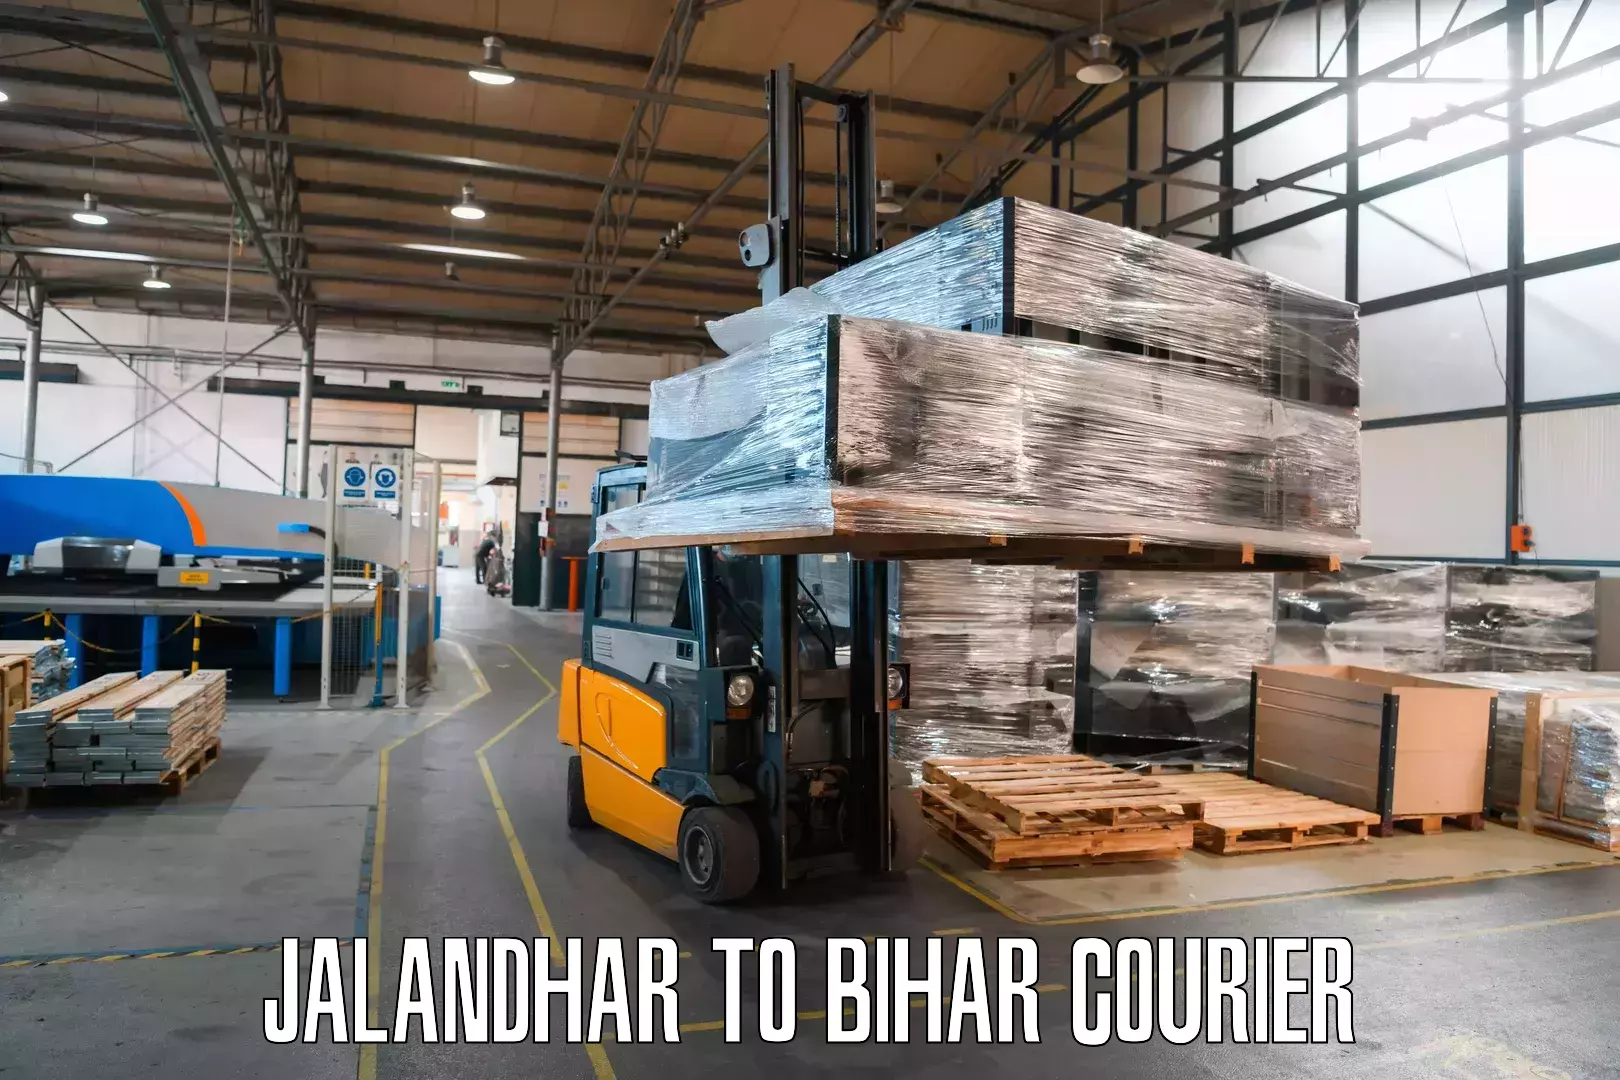 Express package delivery Jalandhar to Bihar